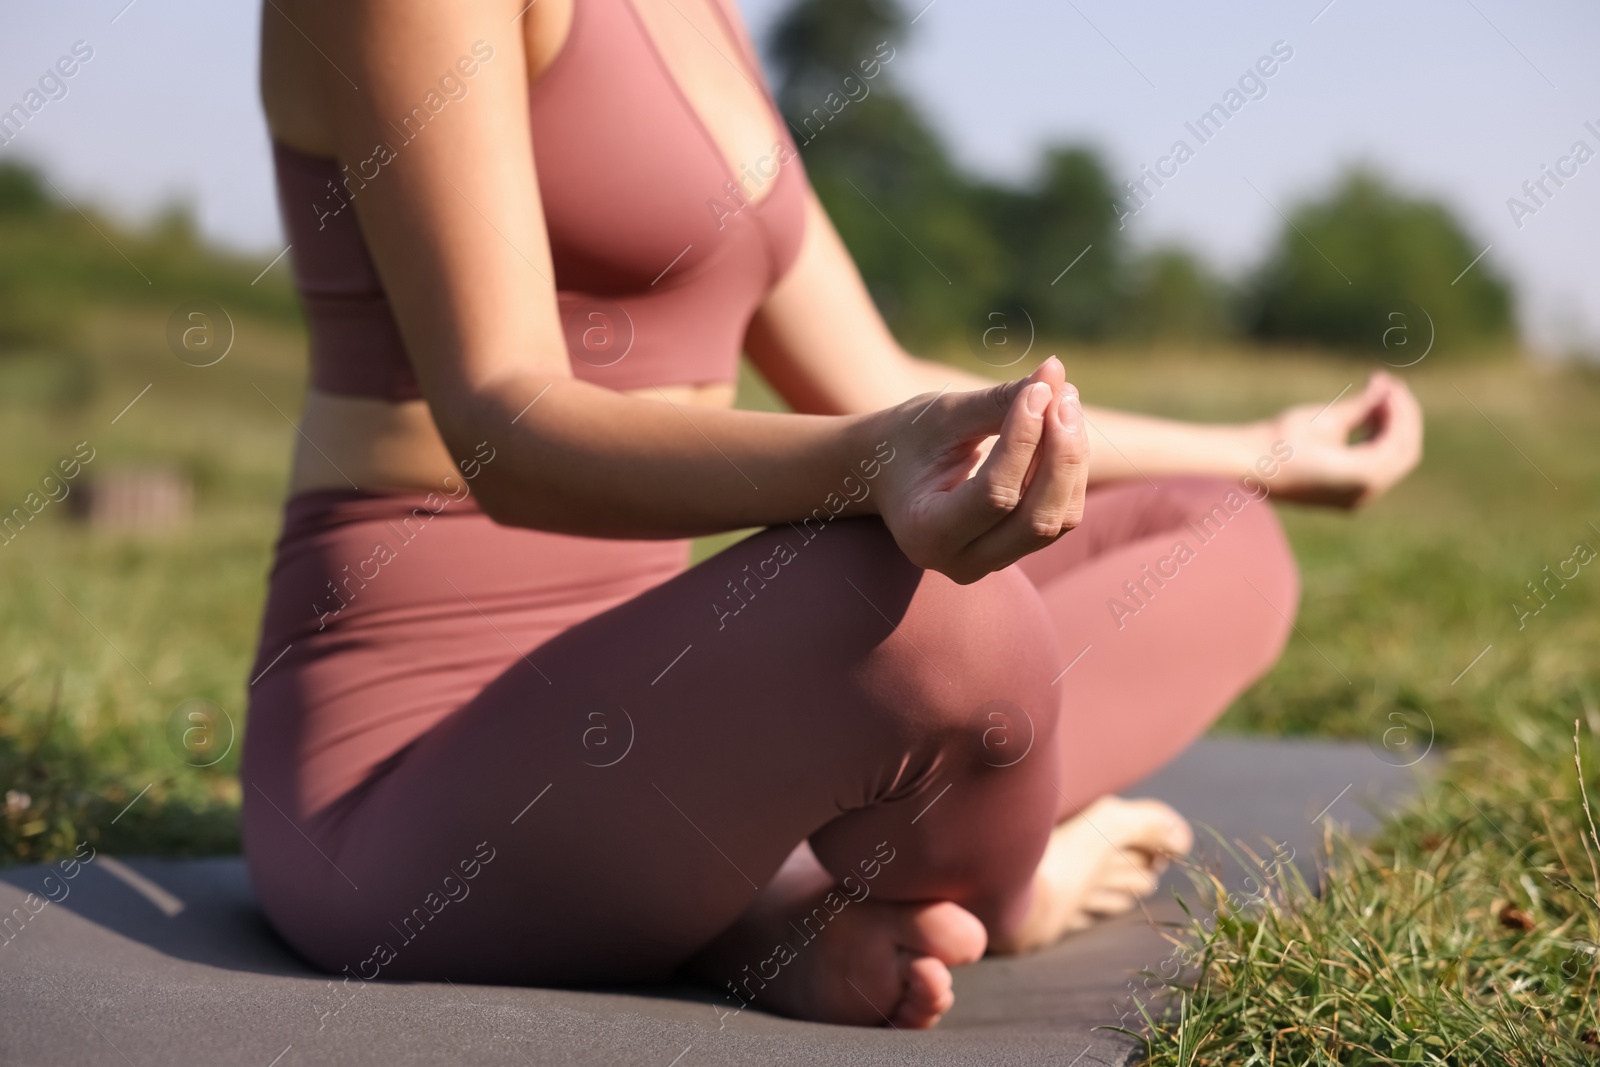 Photo of Woman practicing yoga on mat outdoors, closeup. Lotus pose